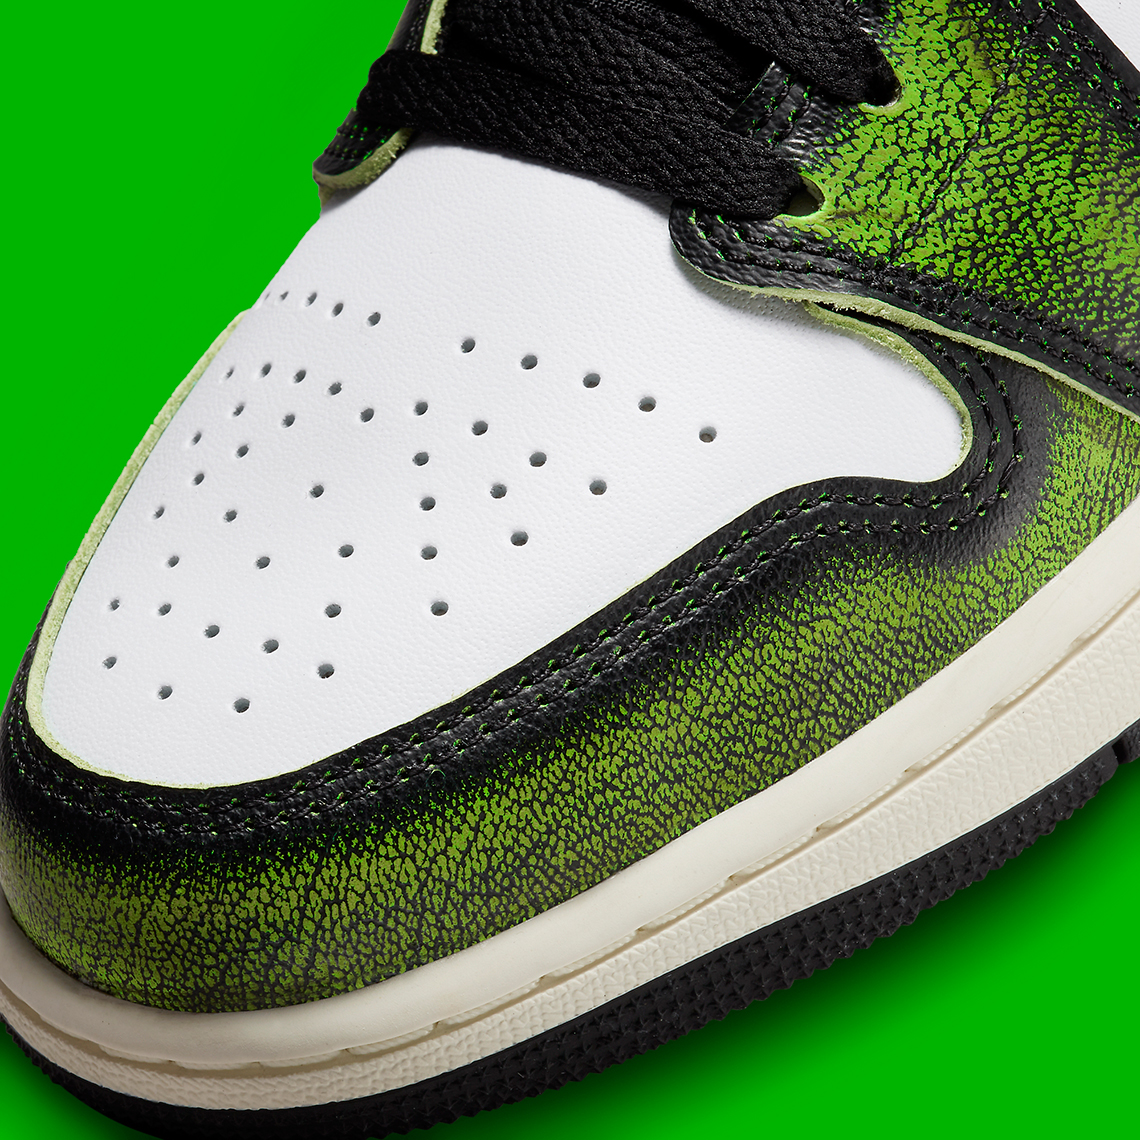 Nike How The Air Bull Jordan 1 High OG Chicago Reimagined Looks On-Feet High Retro OG Gorge Green EU 47 Wear Away Black Green Dn3705 003 2